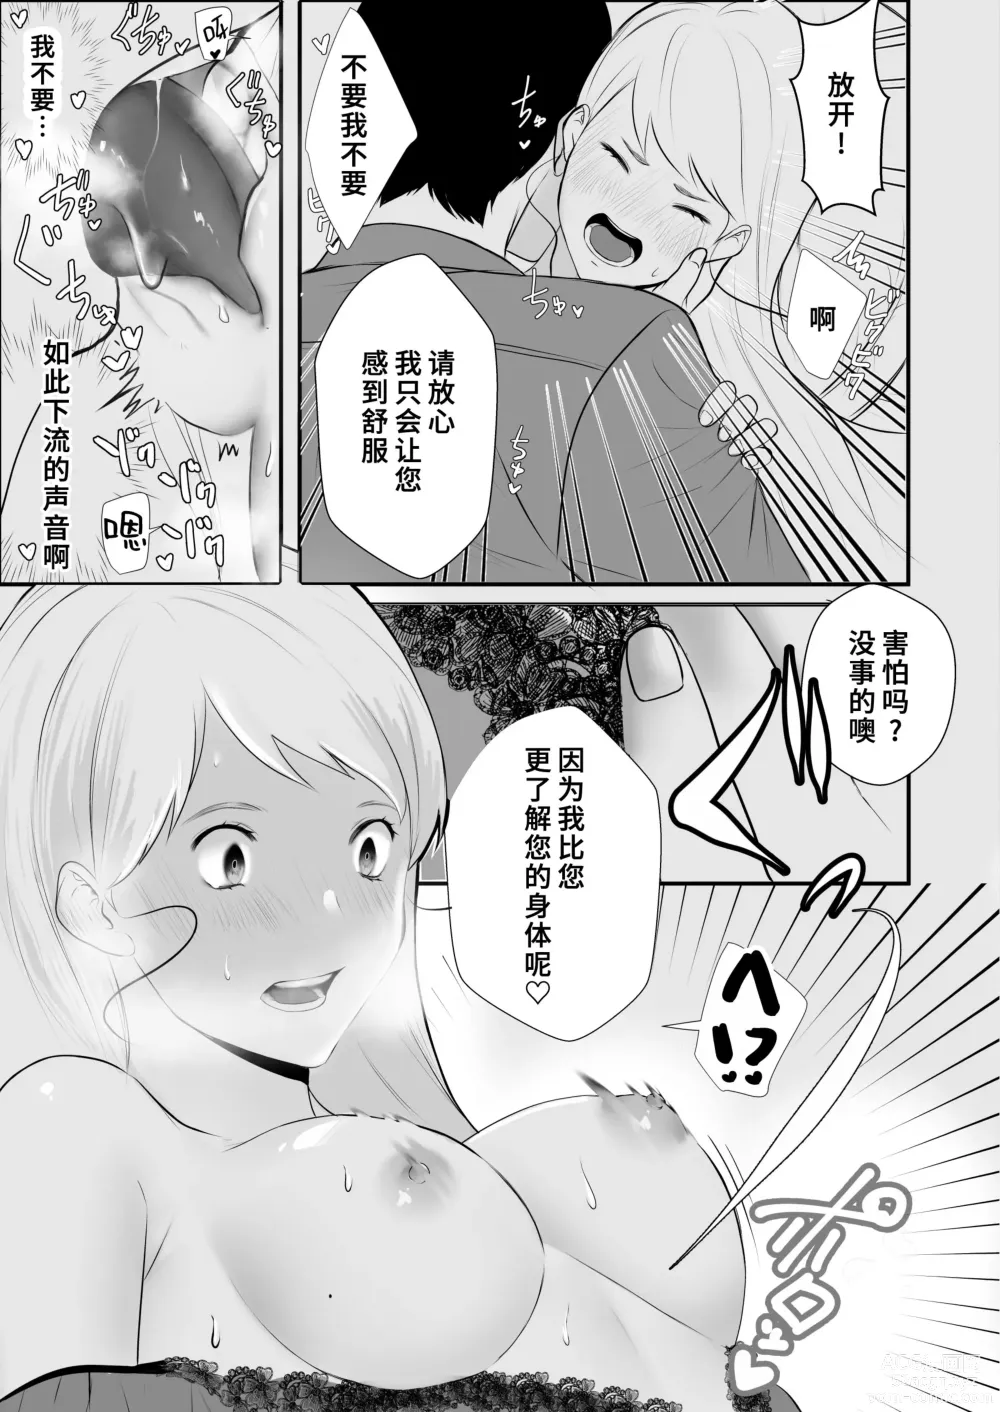 Page 12 of doujinshi 原天才魔法士被敌对死灵法师死缠烂打不放手